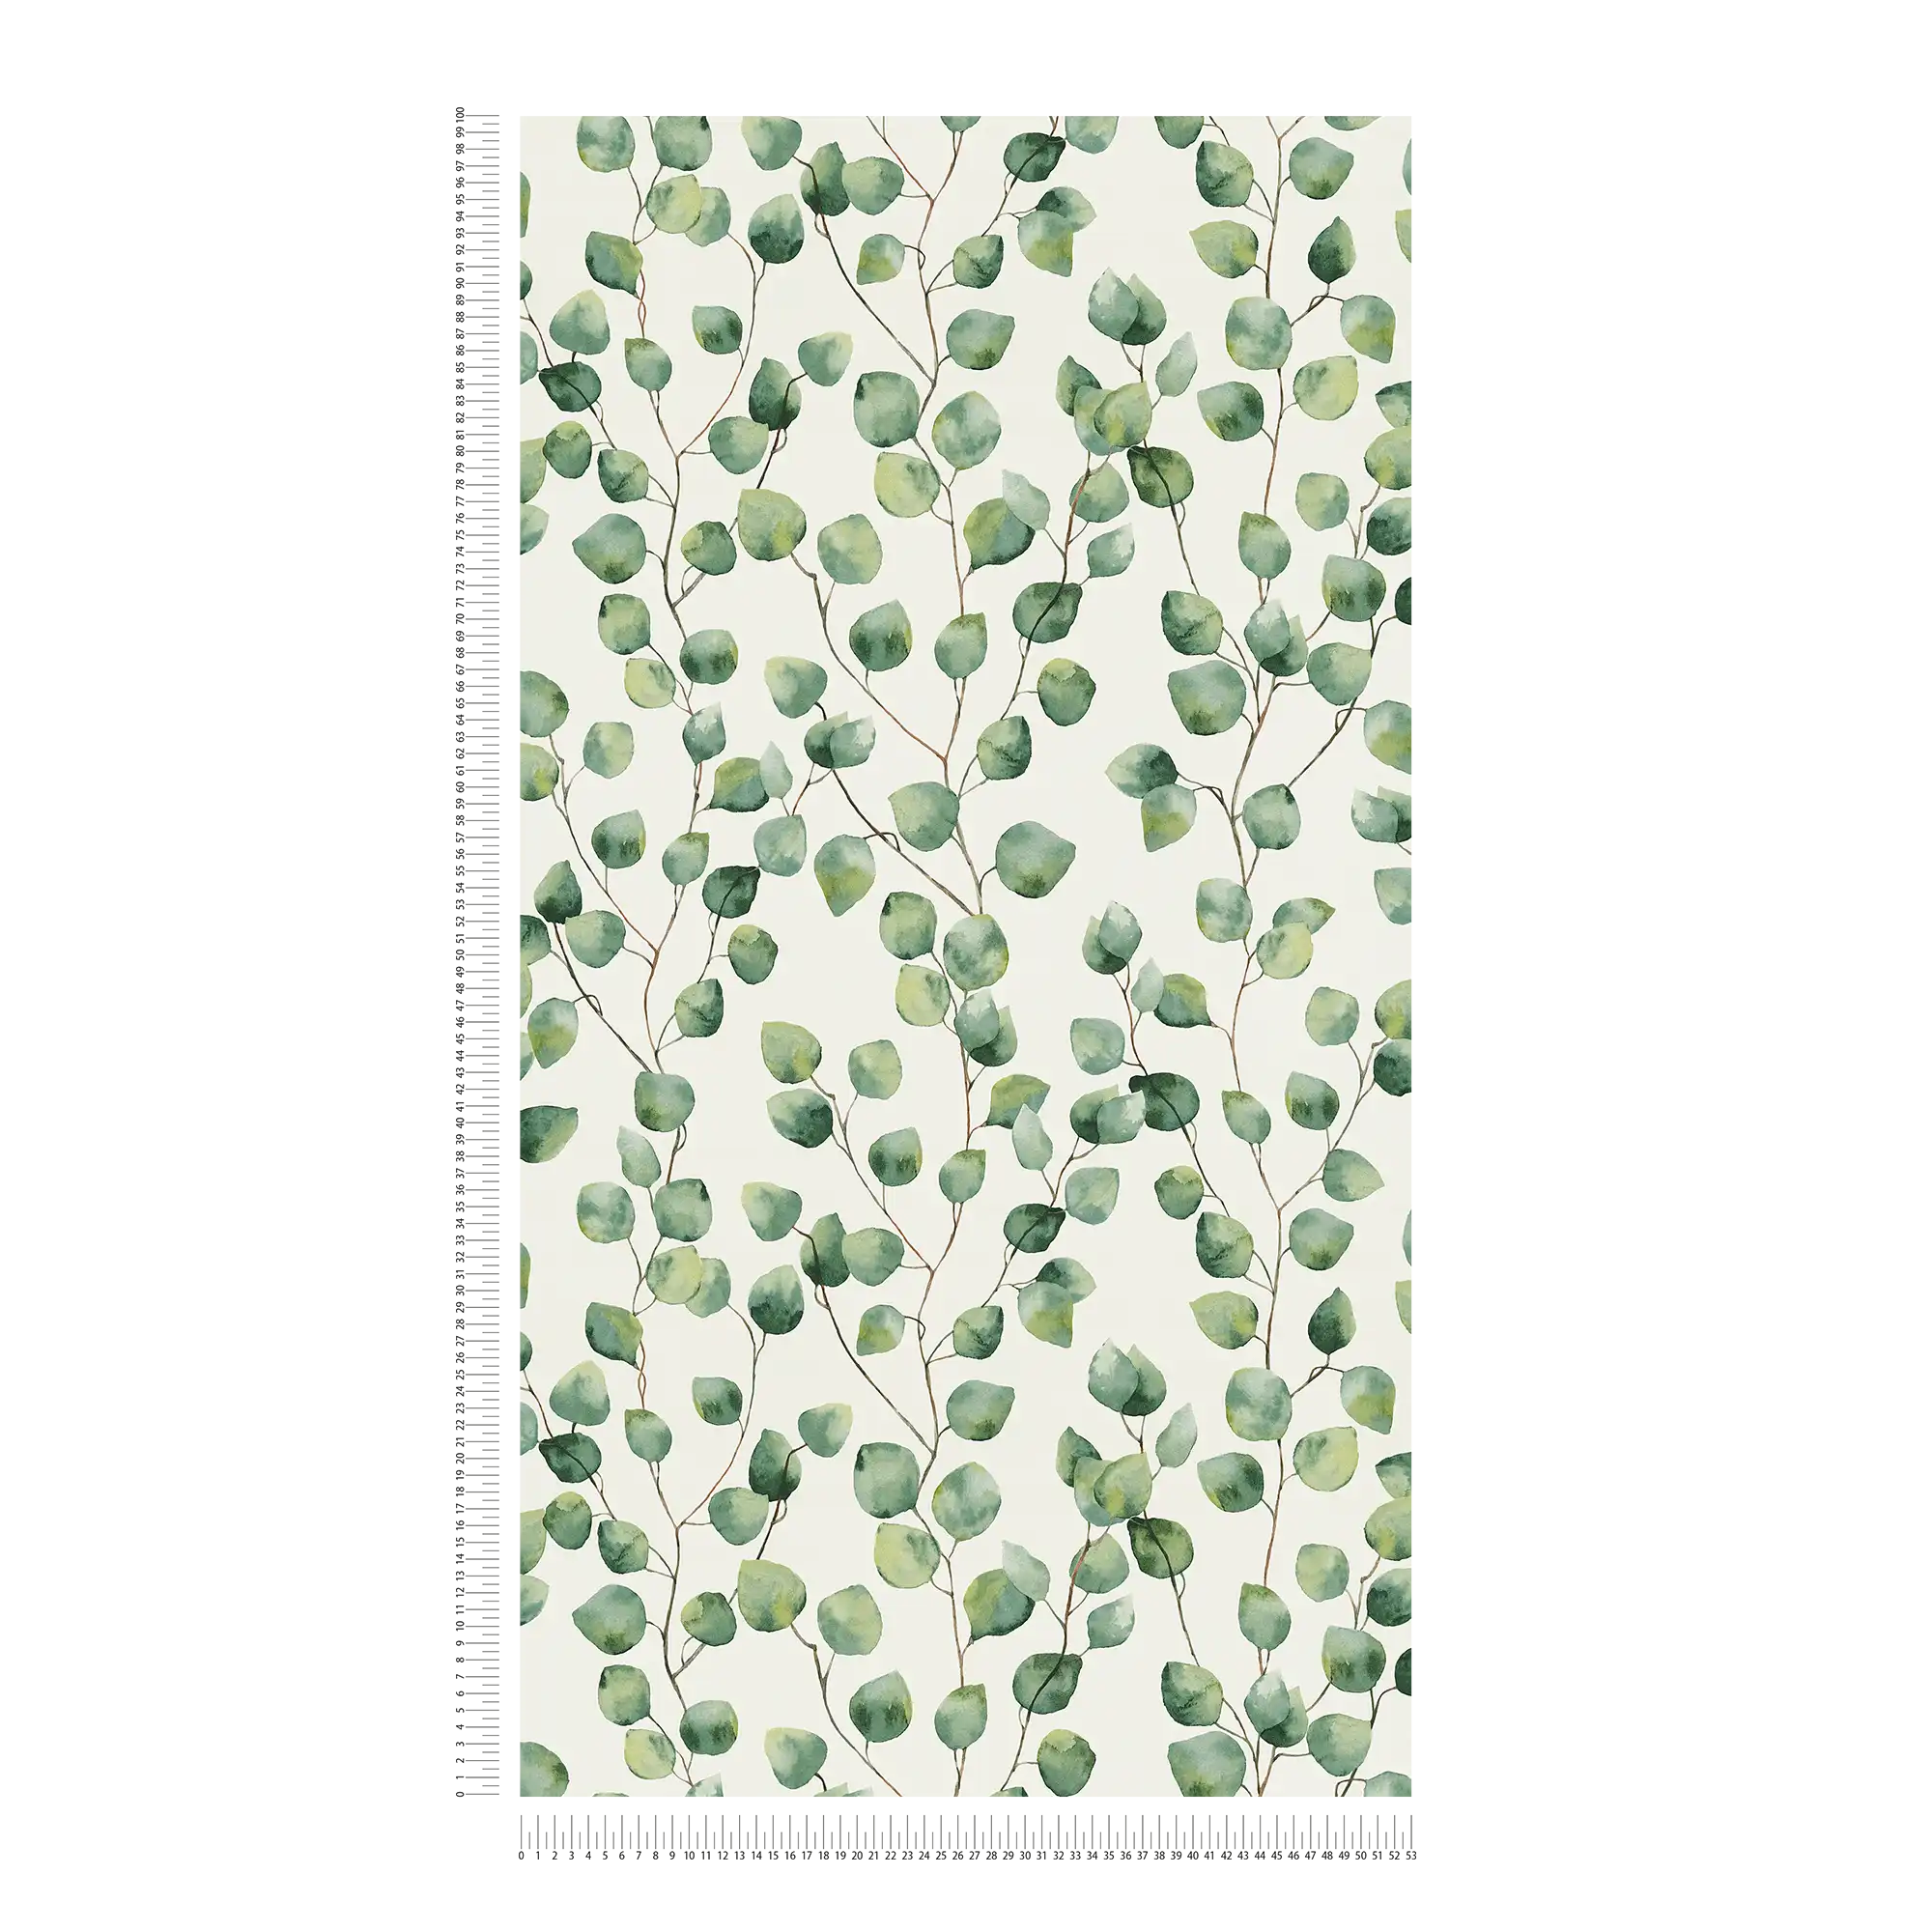             Blätterranken Tapete im Aquarellstil – Grün, Weiß
        